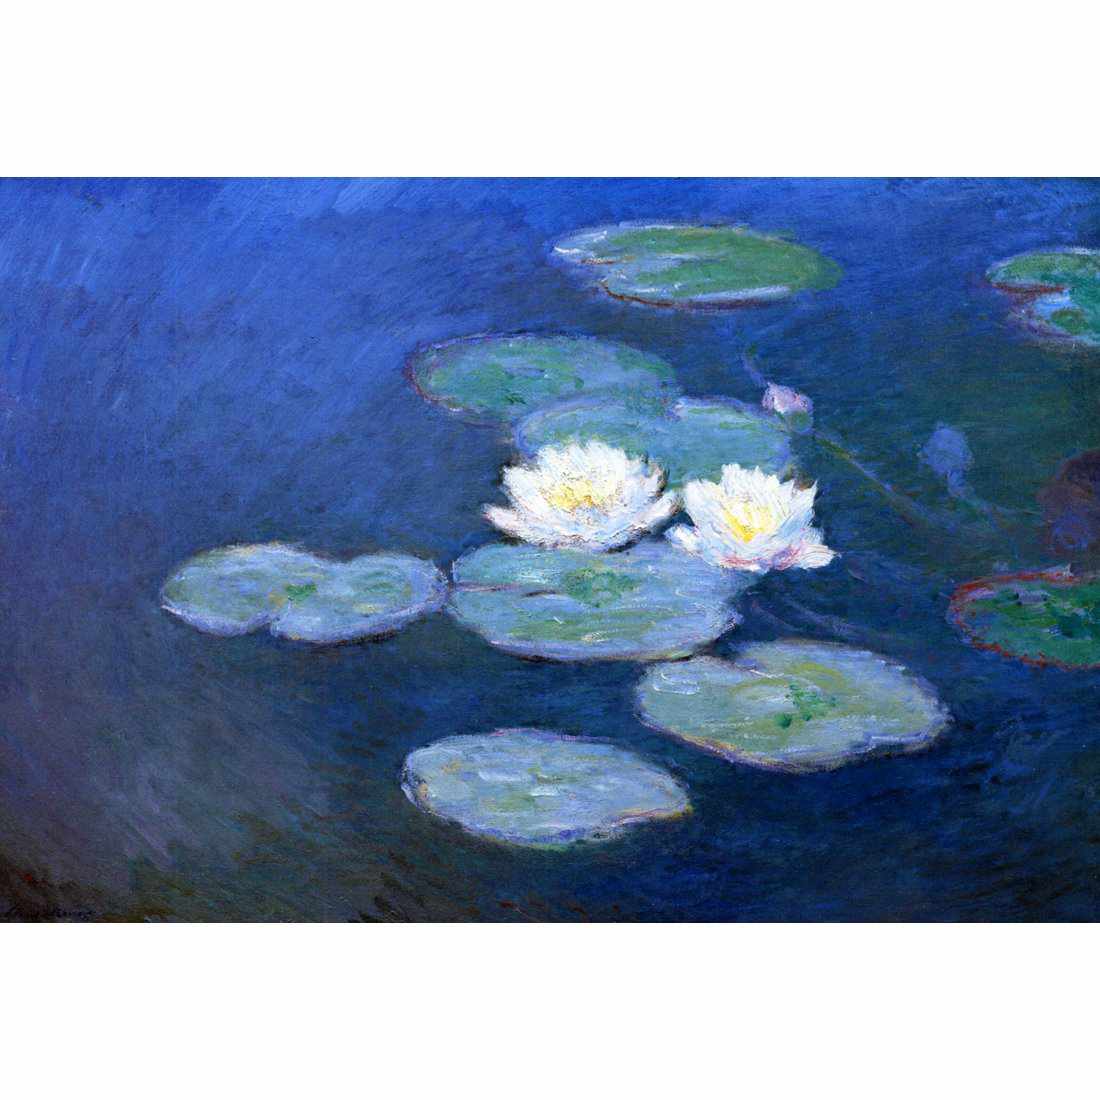 Water Lilies 7 - Monet Canvas Art-Canvas-Wall Art Designs-45x30cm-Canvas - No Frame-Wall Art Designs